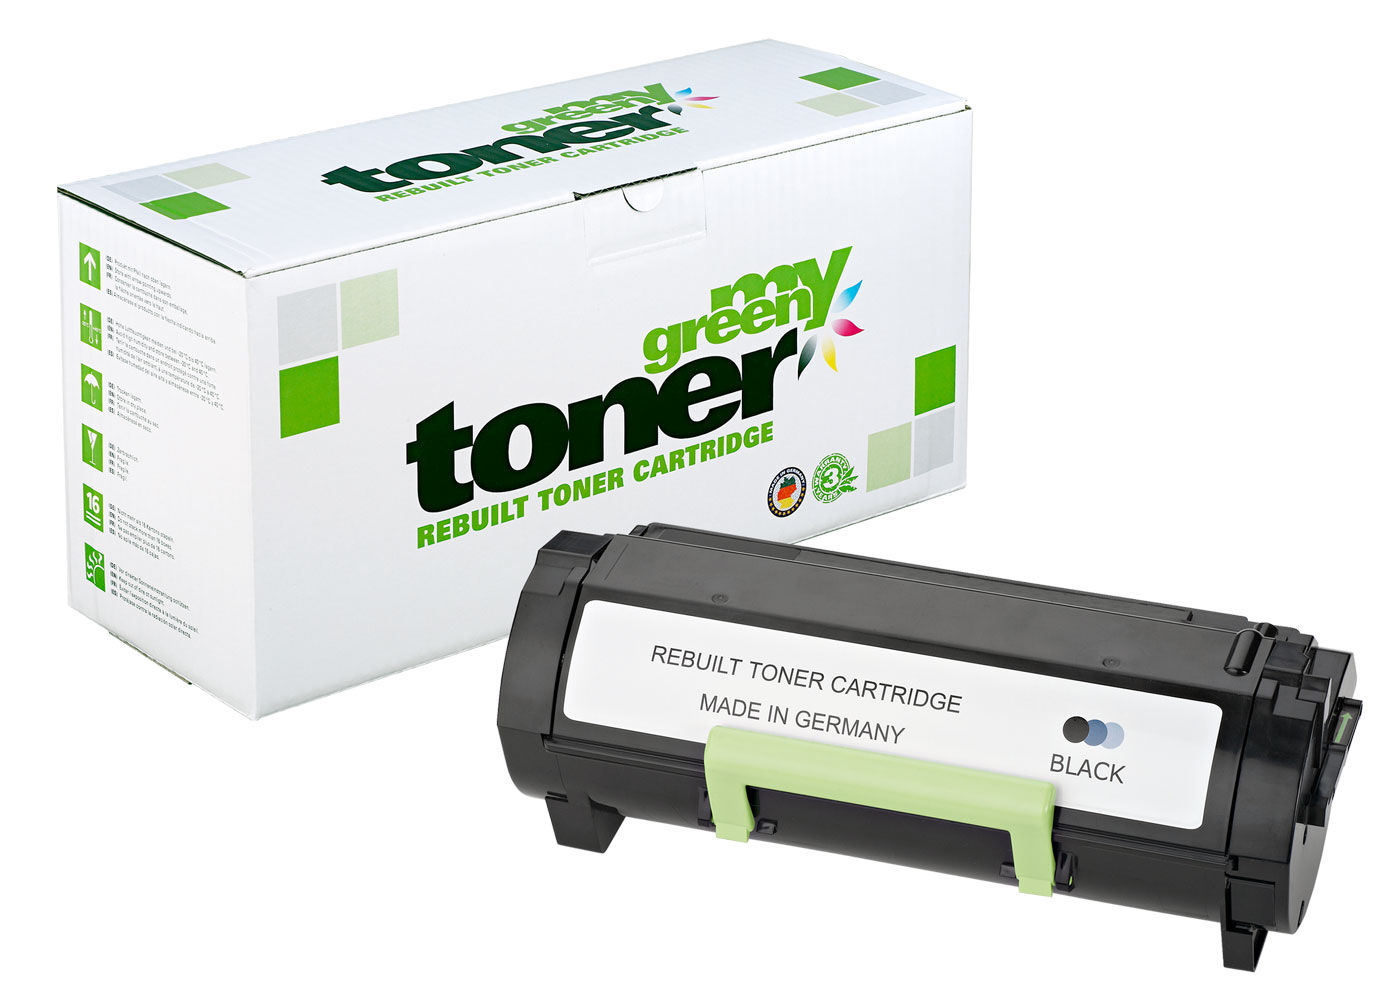 Rebuilt Toner Cartridge for Toshiba E-Studio 385